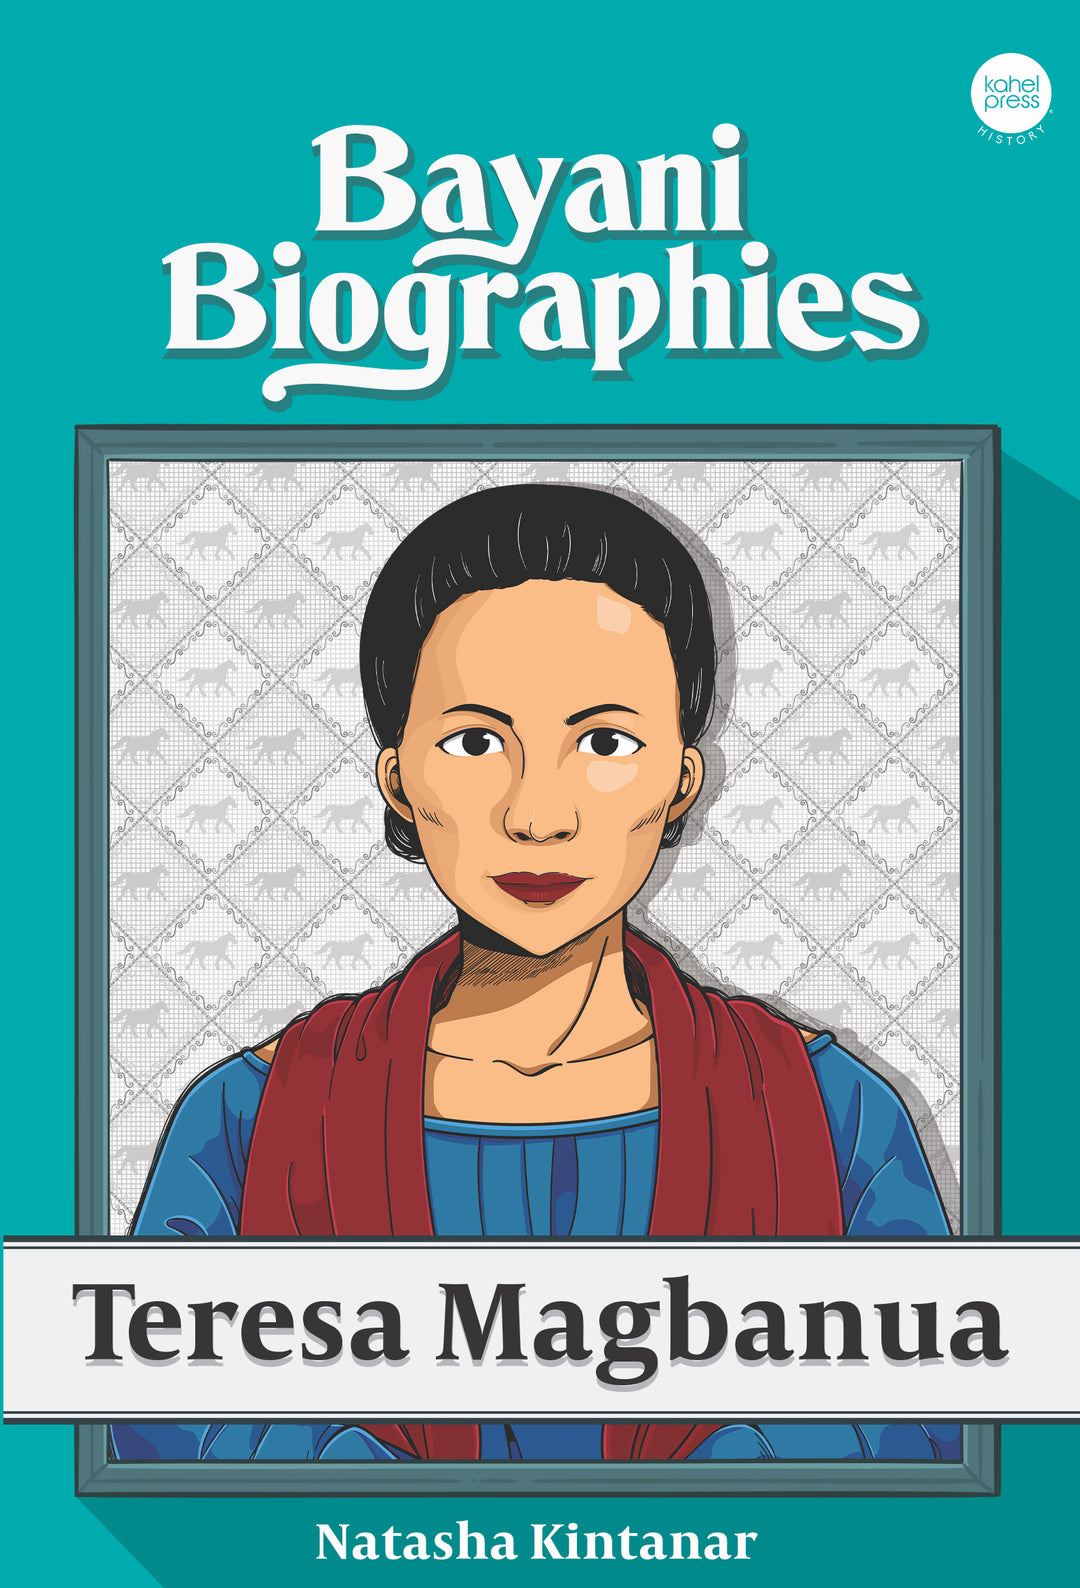 Bayani Biographies: Teresa Magbanua by Natasha Kintanar